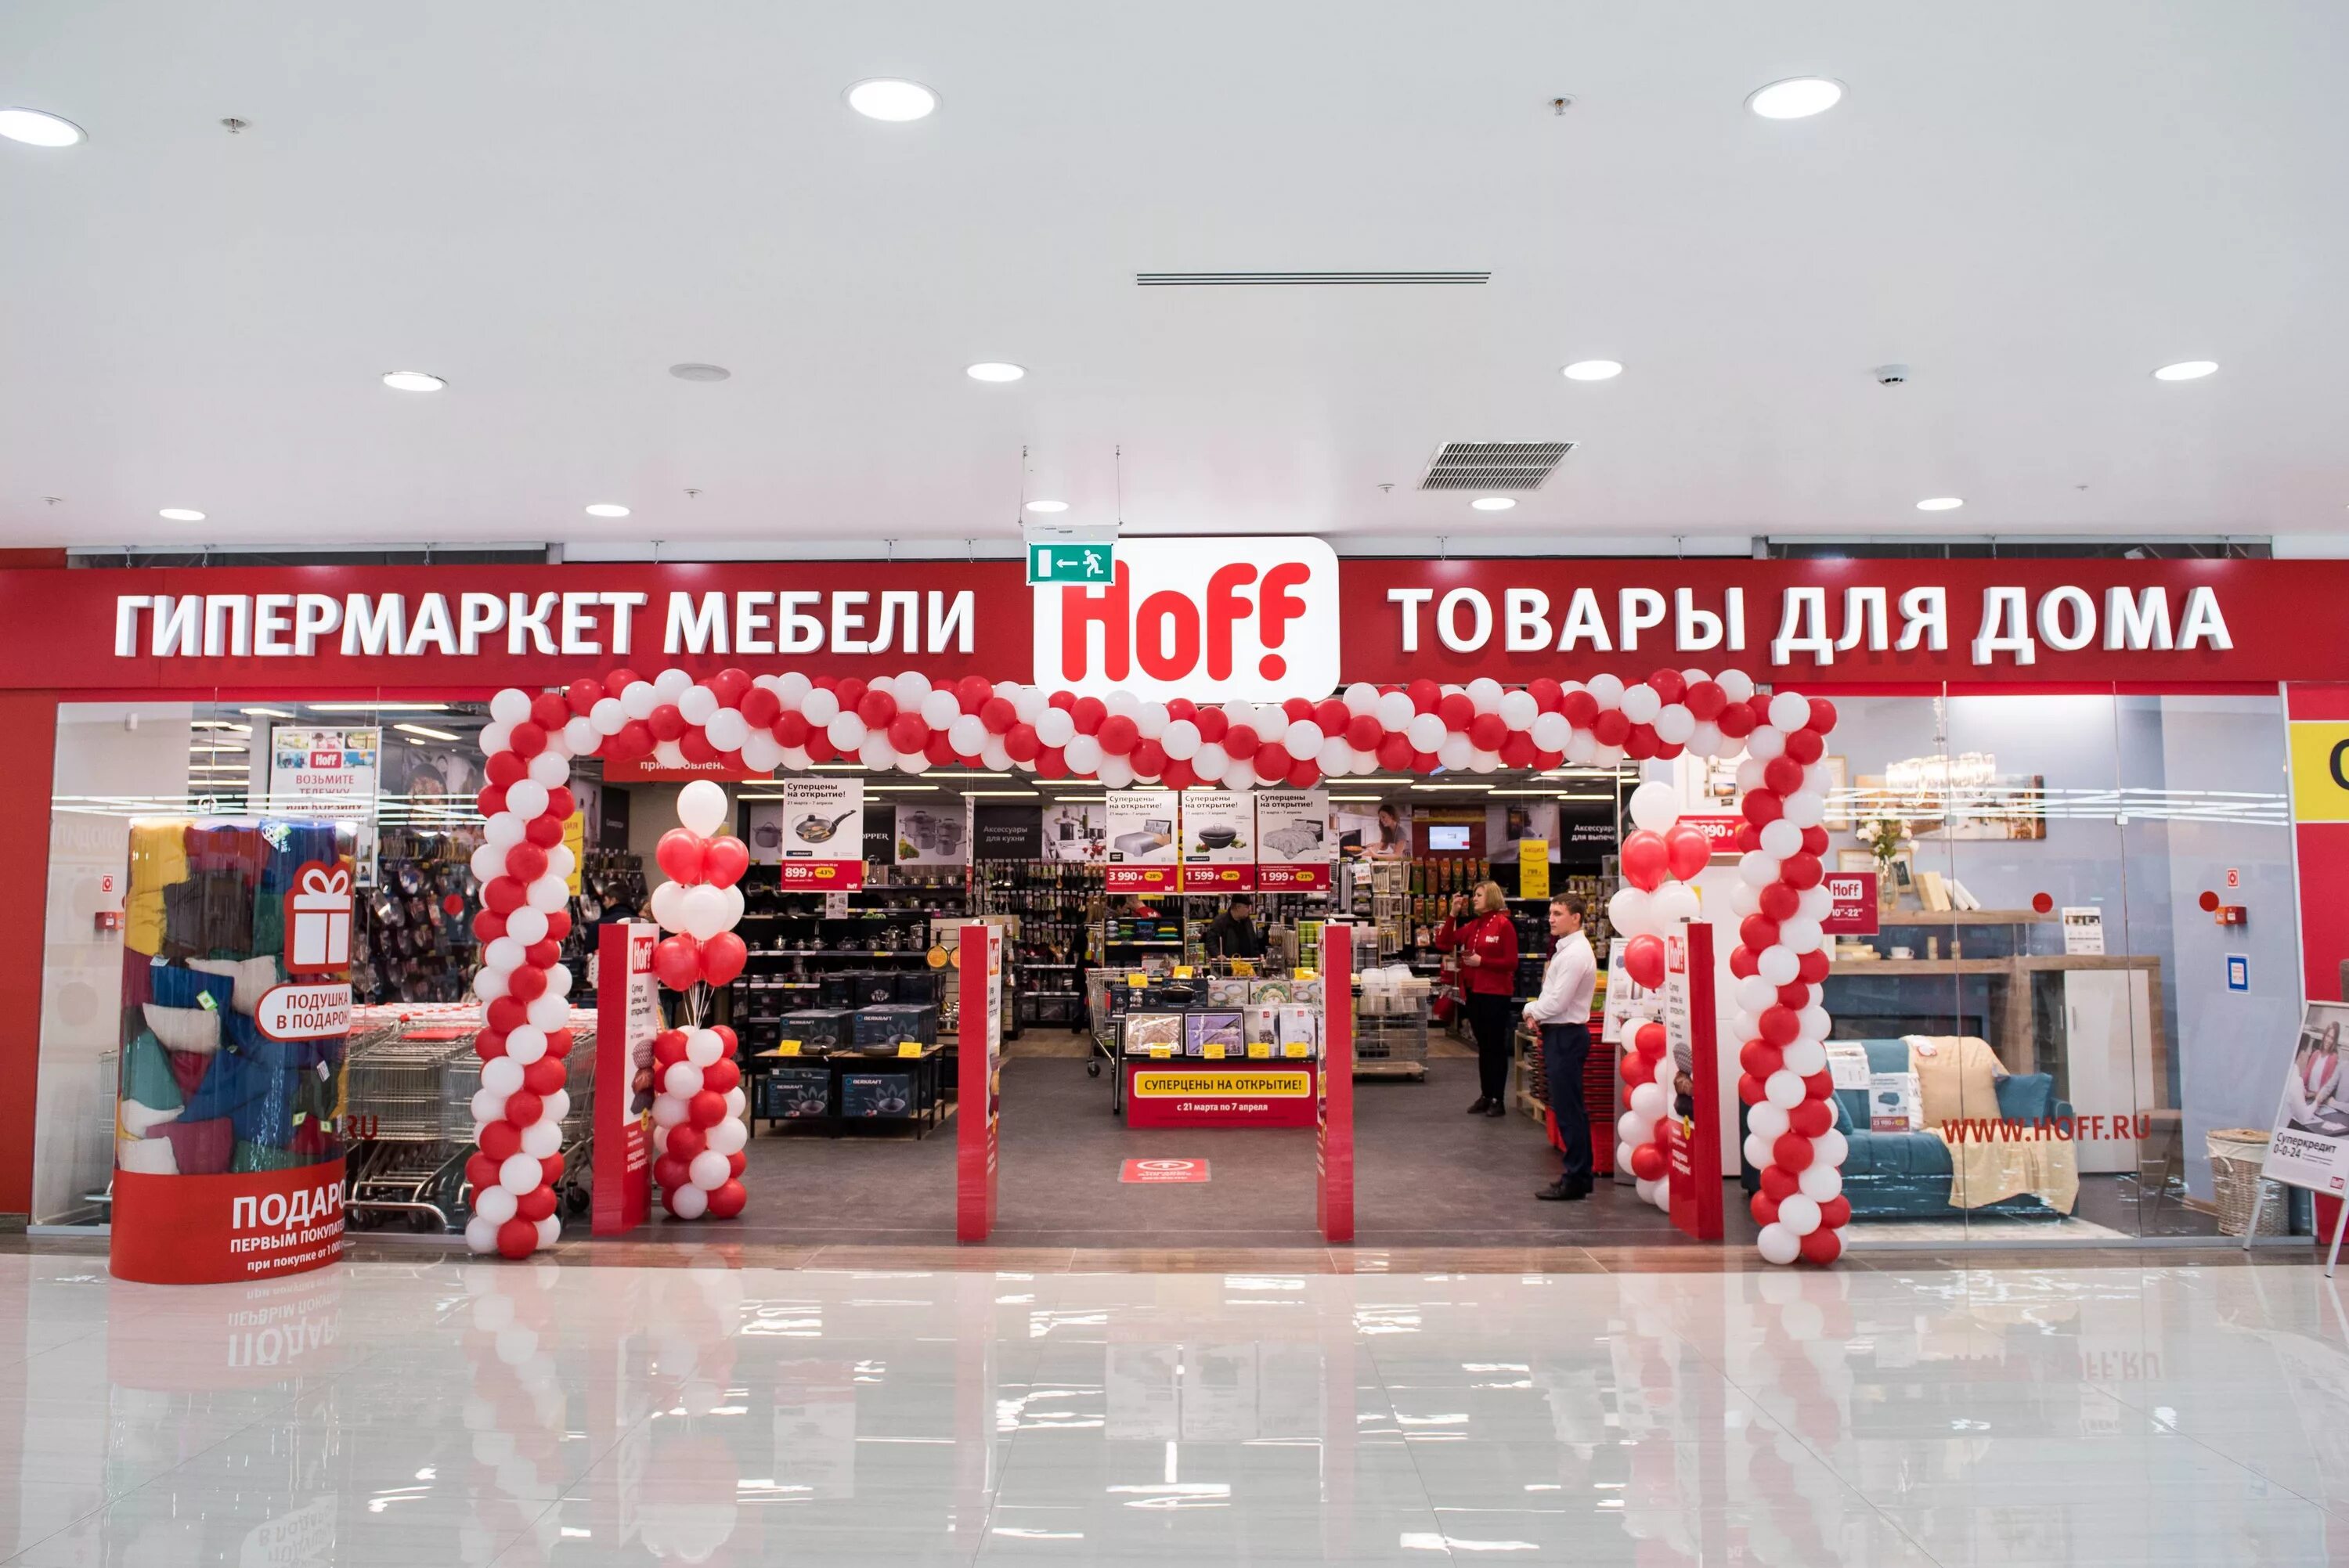 Гипермаркет товаров для дома hoff. Hoff магазин. Hoff гипермаркет. Товары для дома. Открытие магазина.